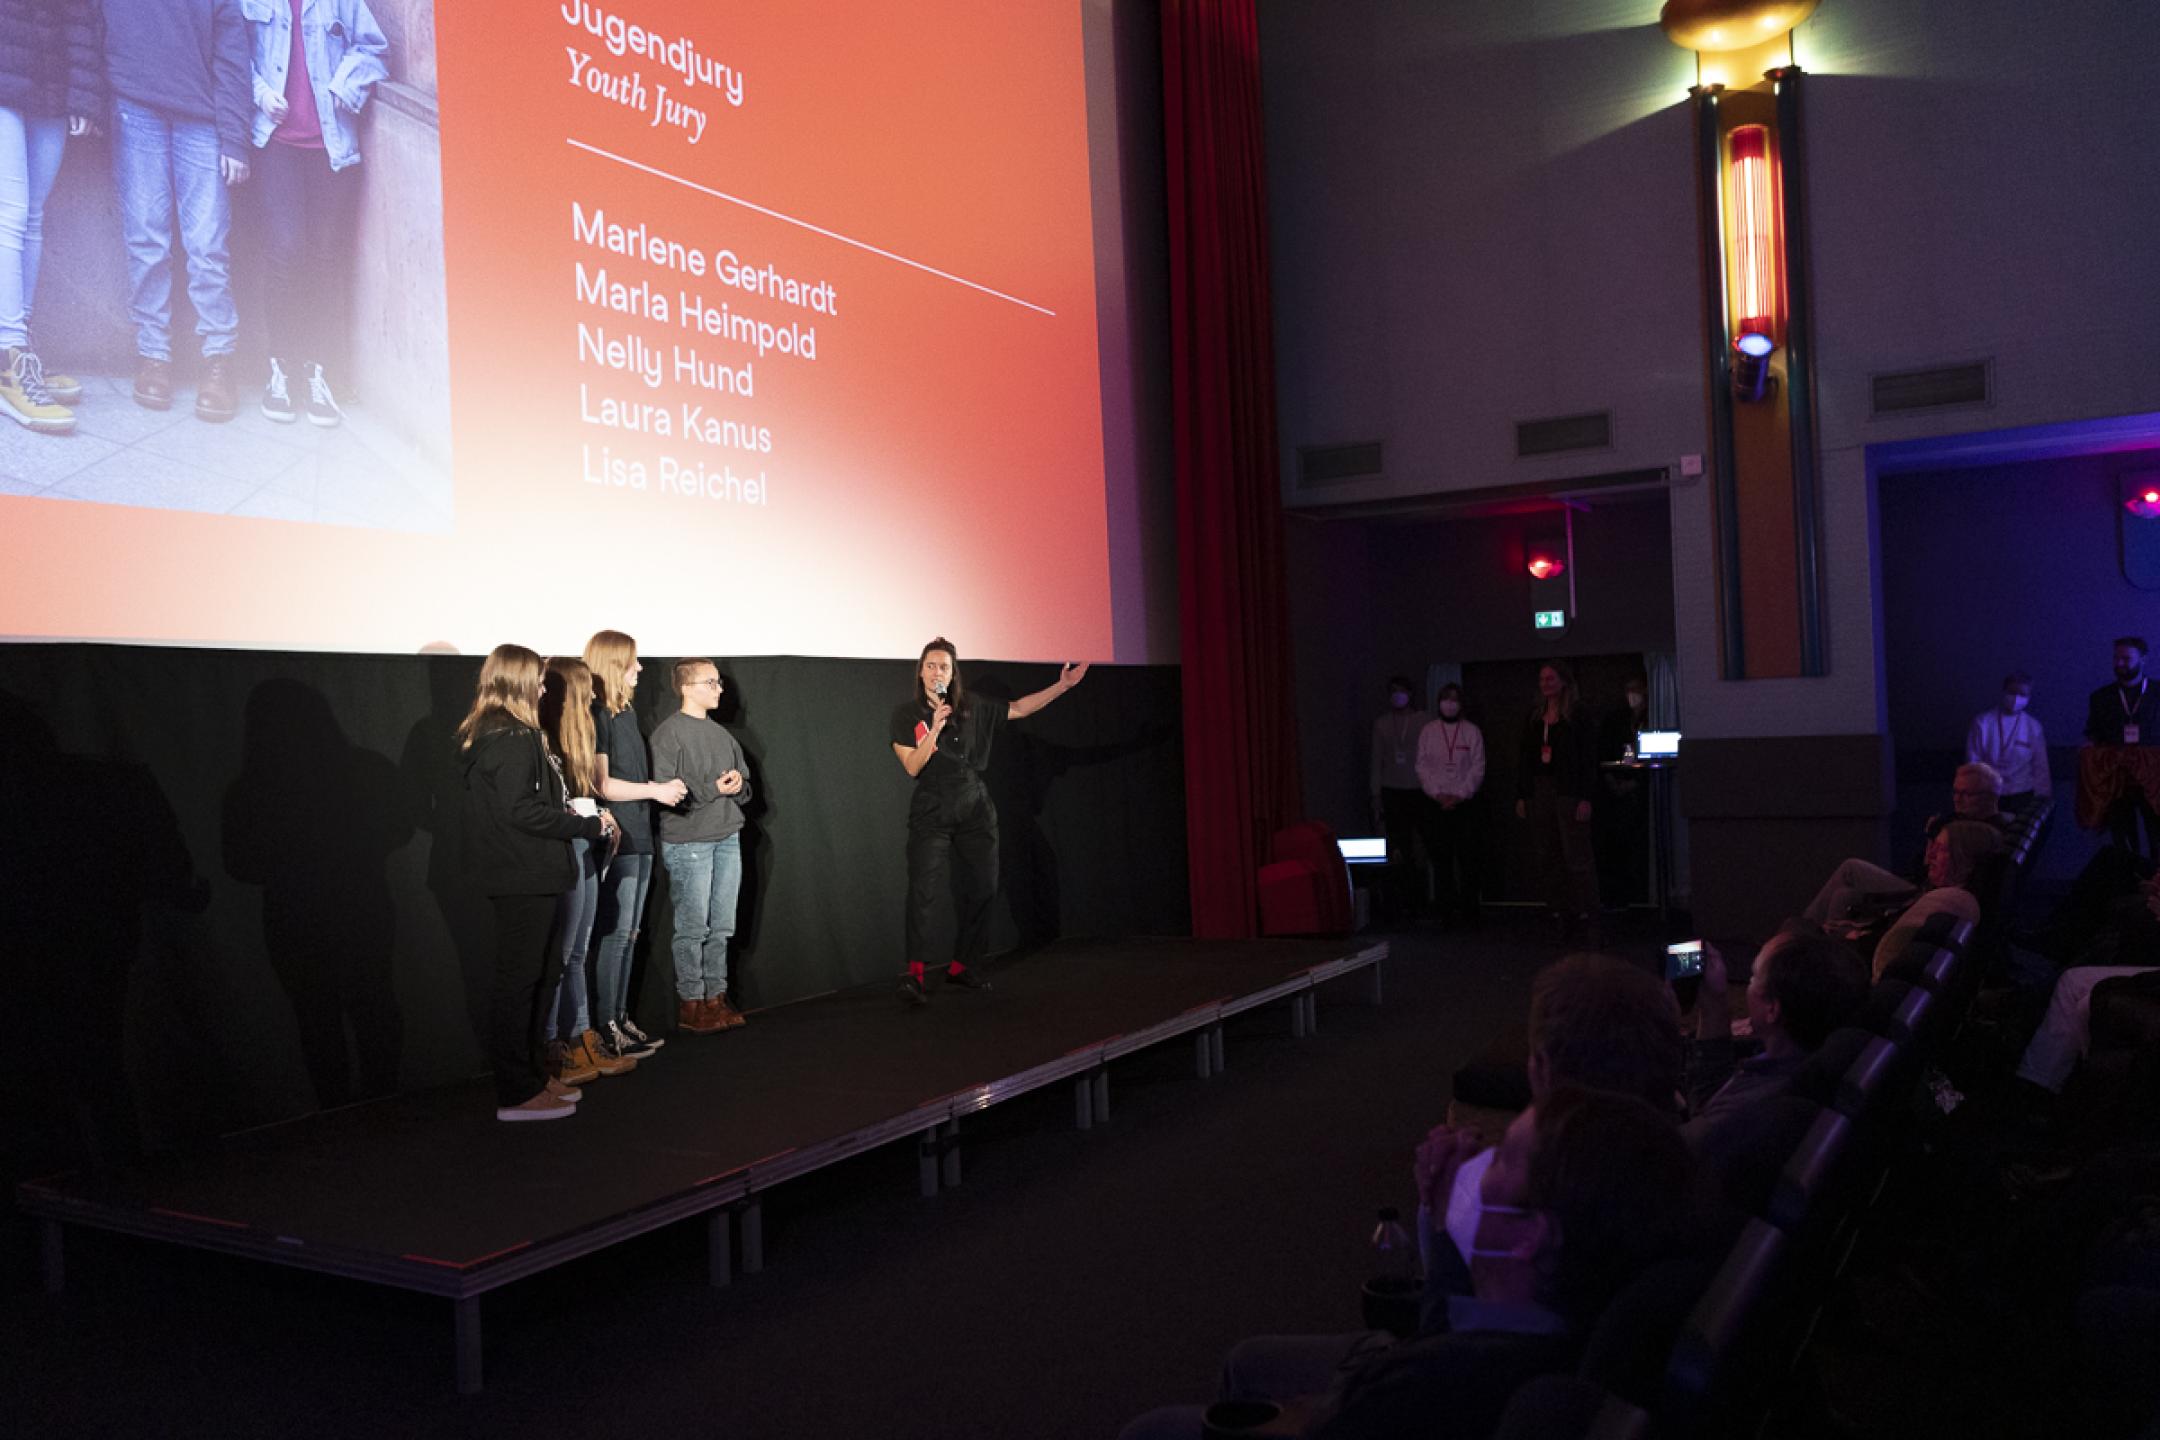 Bei der Verleihung der Partnerpreise: Moderatorin Julia Weigl stellt dem Publikum die vier Mitglieder der Jugendjury vor, die neben ihr stehen. 